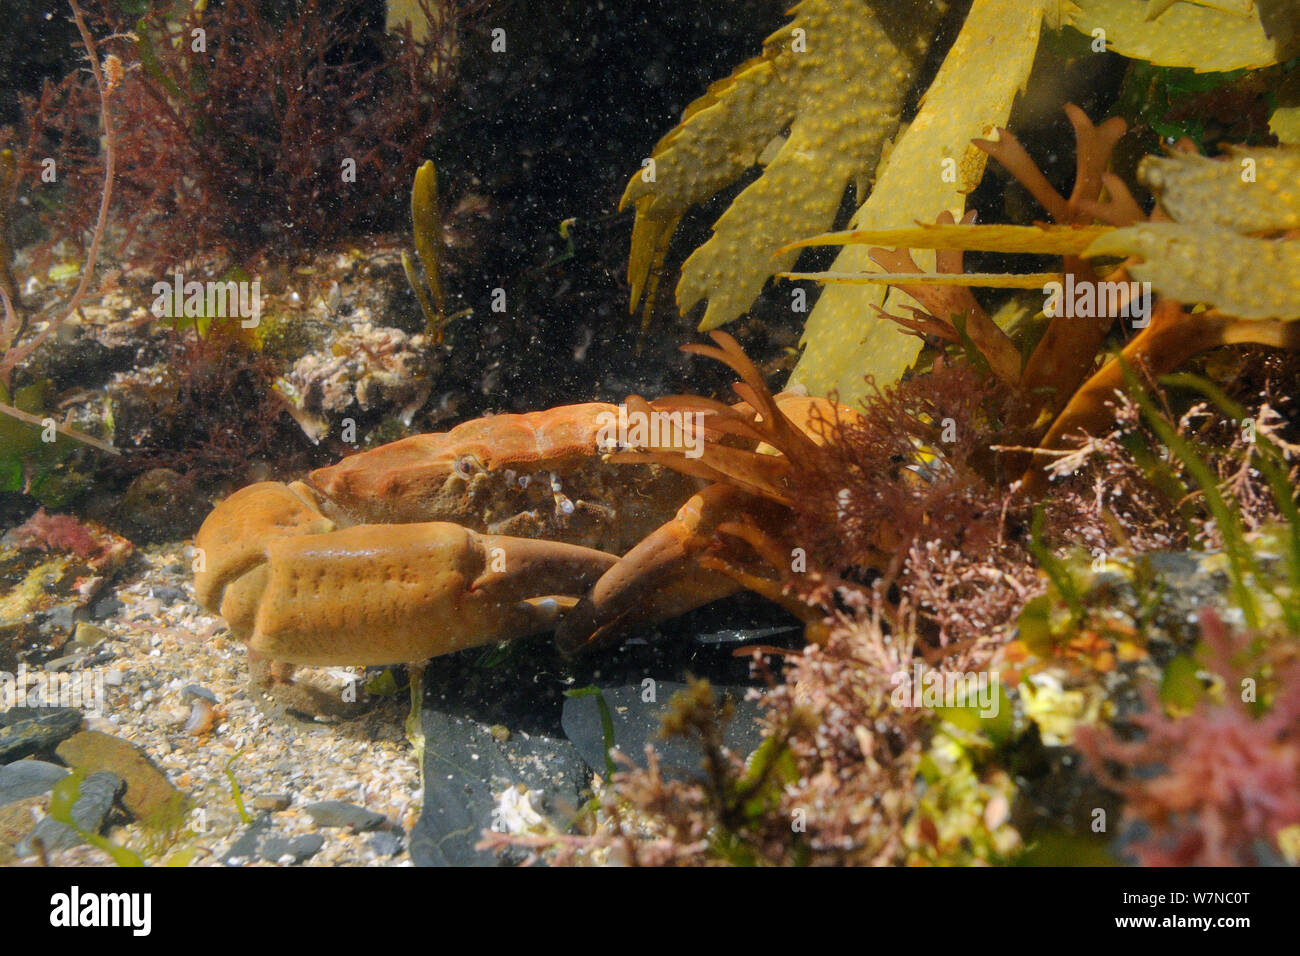 Der Montagu/zerfurcht Crab (Lophozozymus Xantho incisus/hydrophilus) im rockpool, in der Nähe von Falmouth, Cornwall, UK, August. Stockfoto